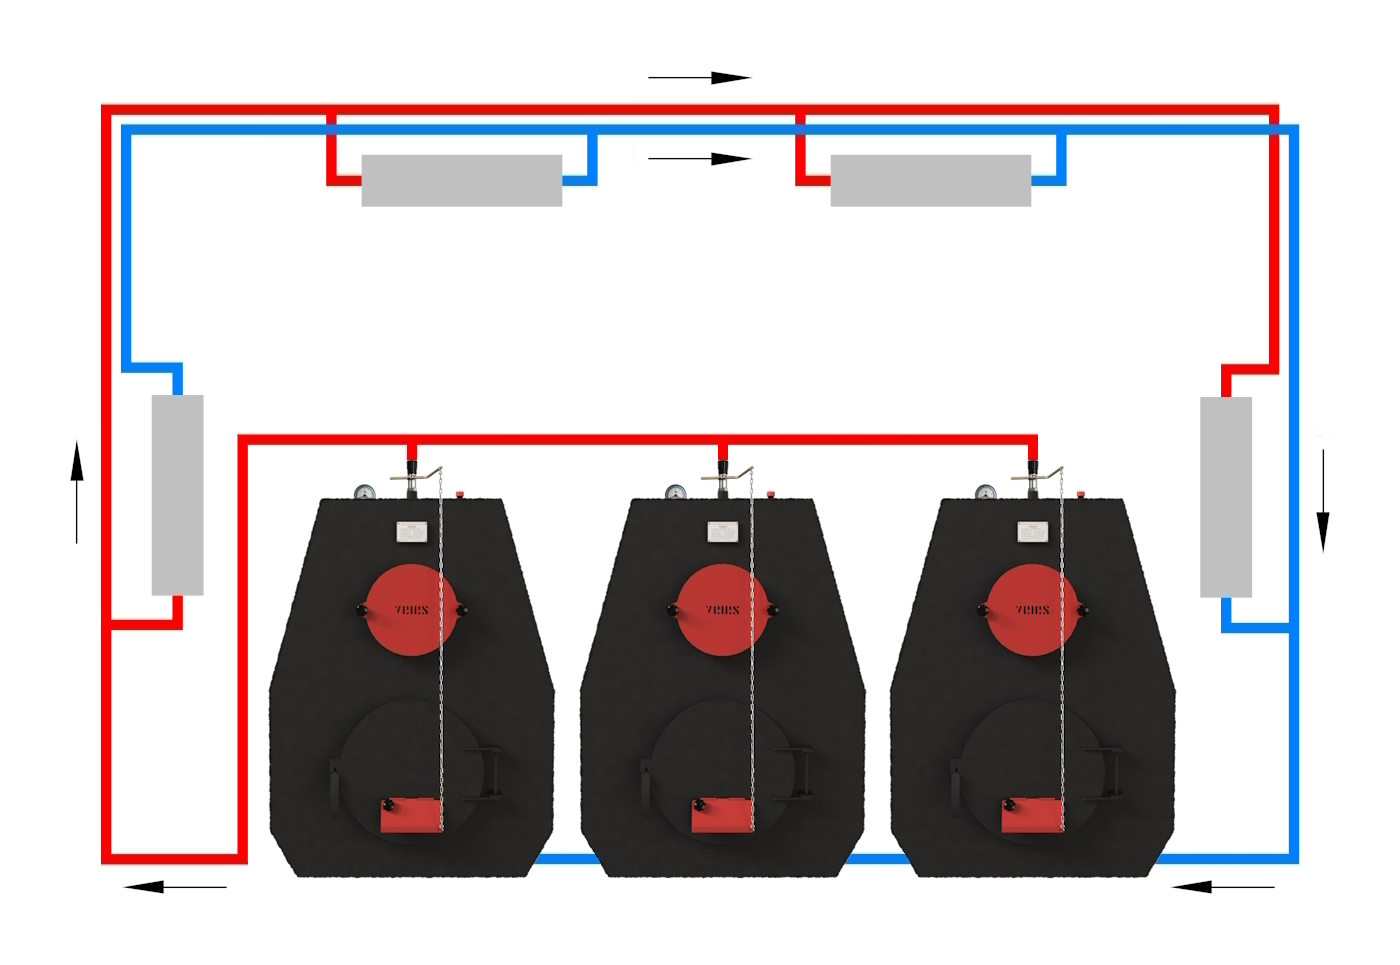 Схема отопления с попутным движением теплоносителя